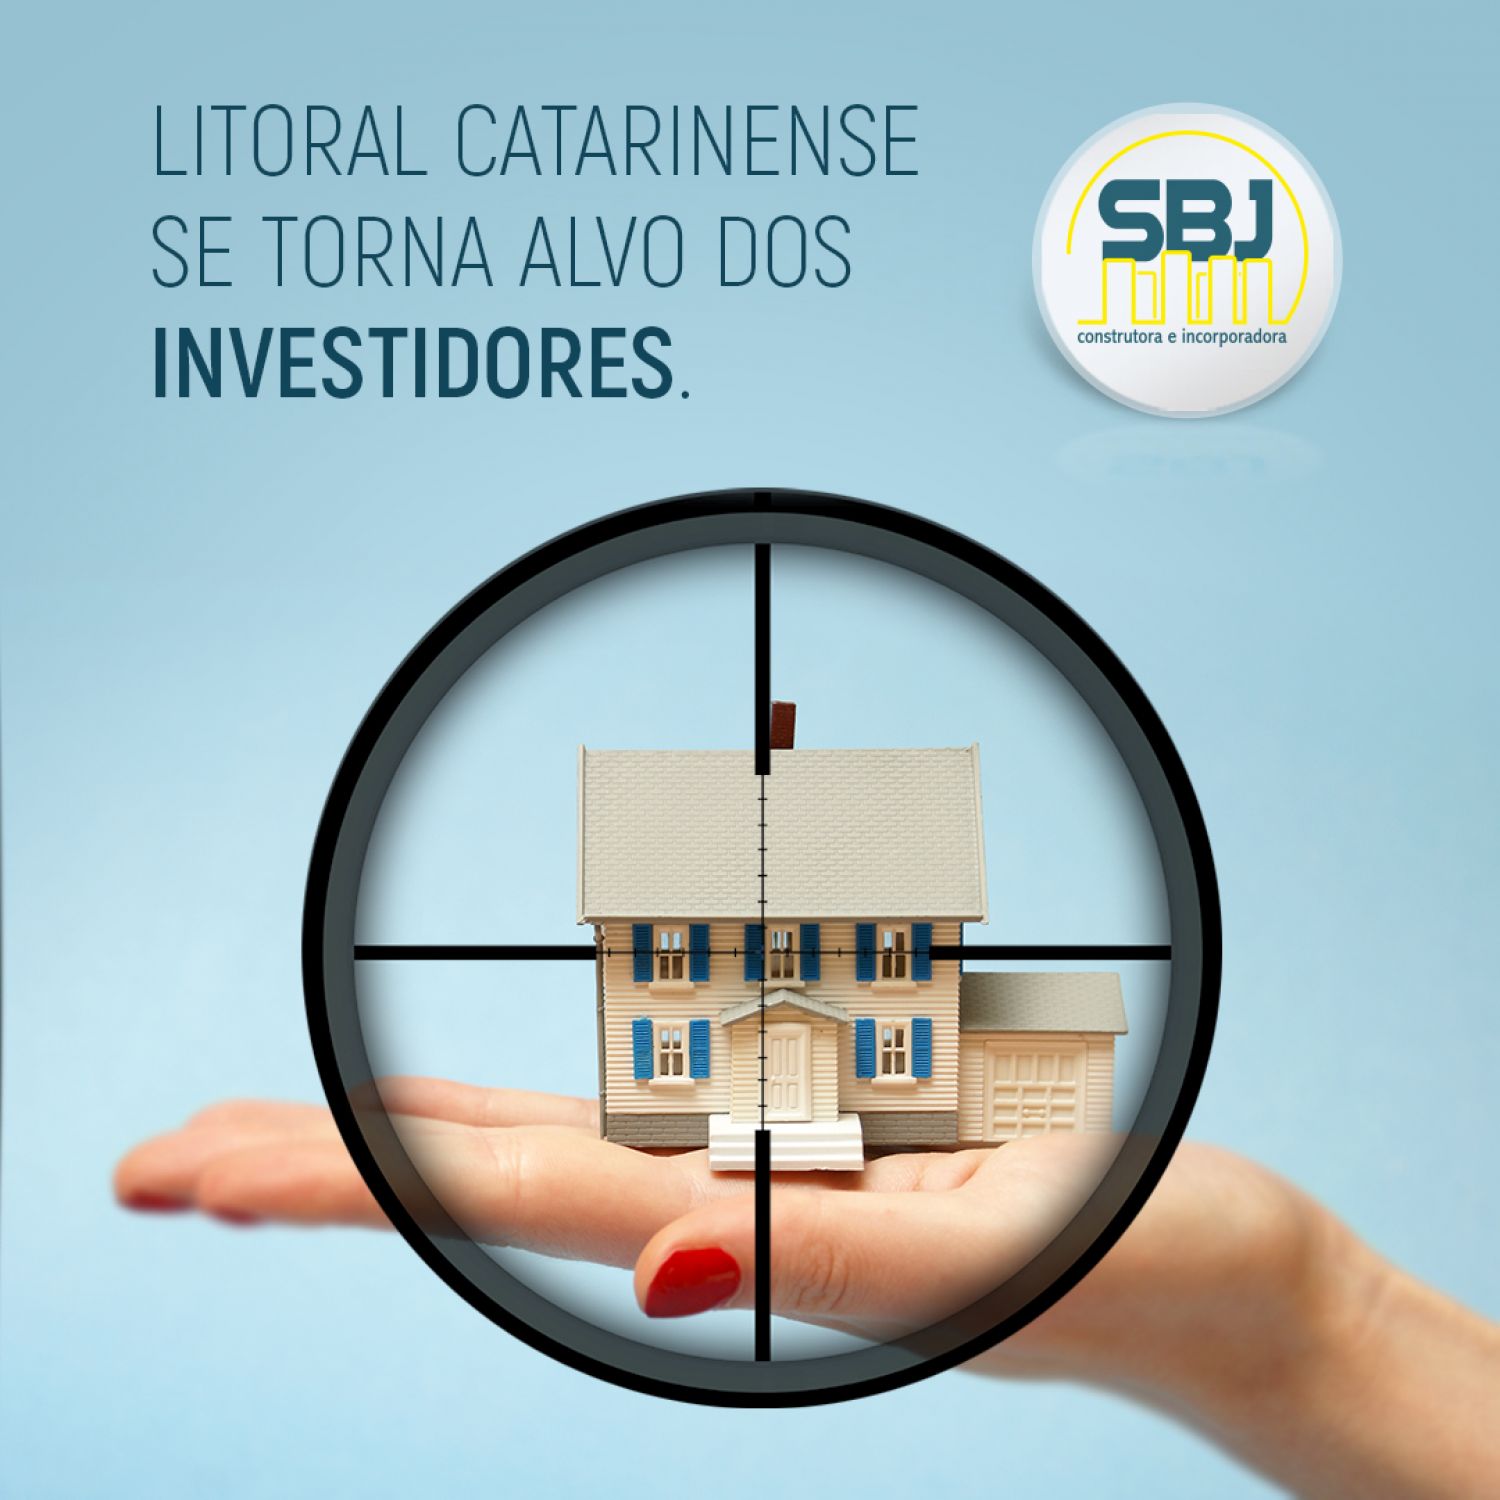 Litoral catarinense se torna alvo dos investidores